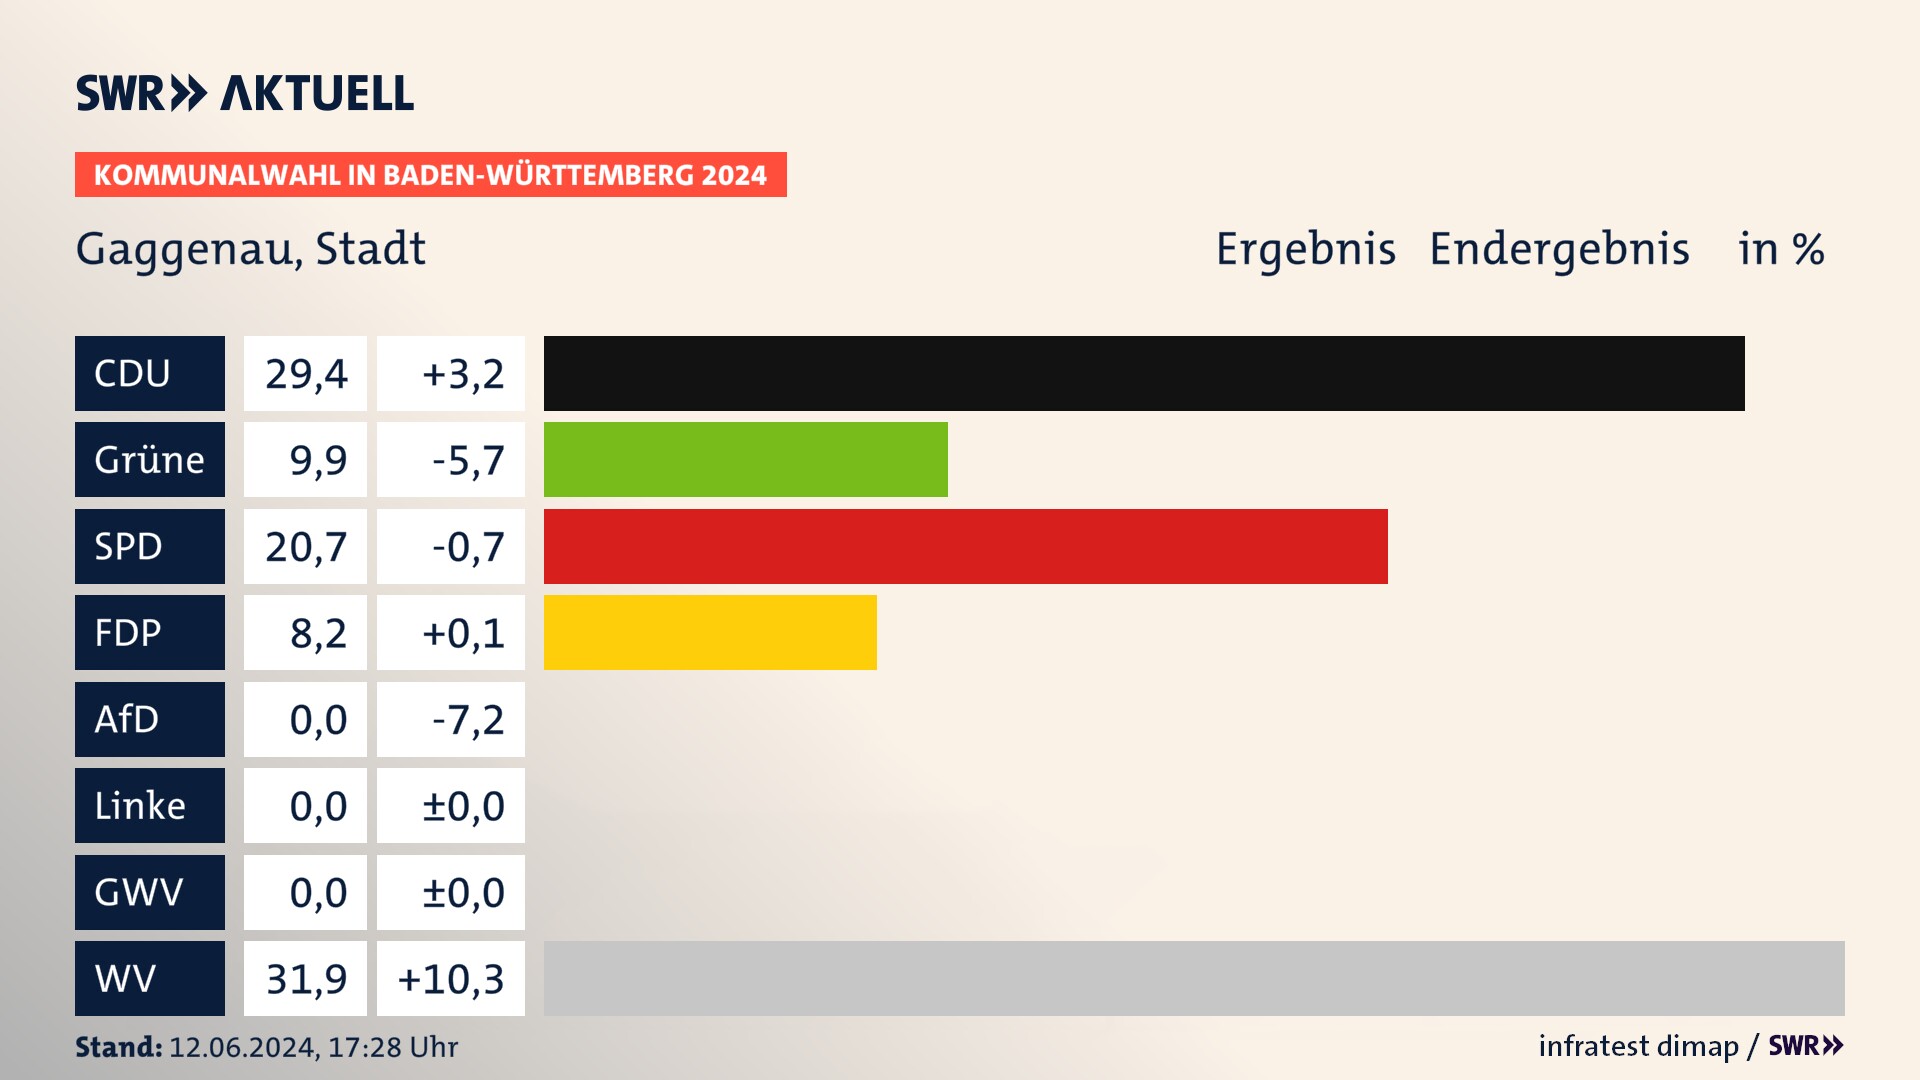 Kommunalwahl 2024 Endergebnis Zweitstimme für Gaggenau. In Gaggenau, Stadt erzielt die CDU 29,4 Prozent der gültigen  Stimmen. Die Grünen landen bei 9,9 Prozent. Die SPD erreicht 20,7 Prozent. Die FDP kommt auf 8,2 Prozent. Die Wählervereinigungen landen bei 31,9 Prozent.